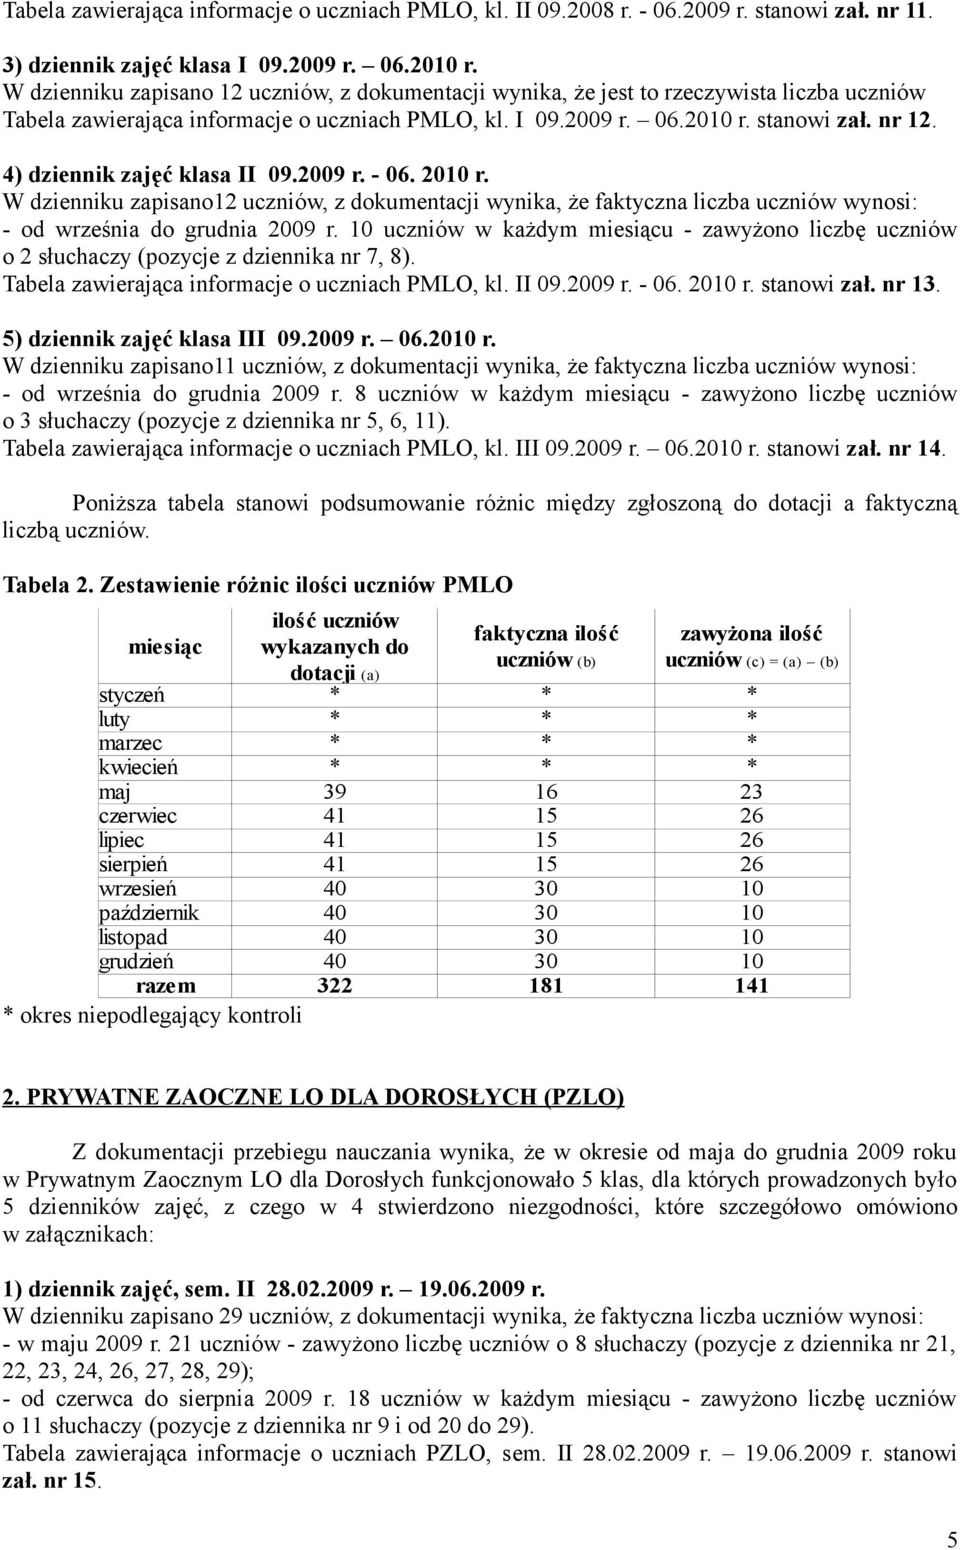 4) dziennik zajęć klasa II 09.2009 r. - 06. 2010 r. W dzienniku zapisano12 uczniów, z dokumentacji wynika, że faktyczna liczba uczniów wynosi: - od września do grudnia 2009 r.